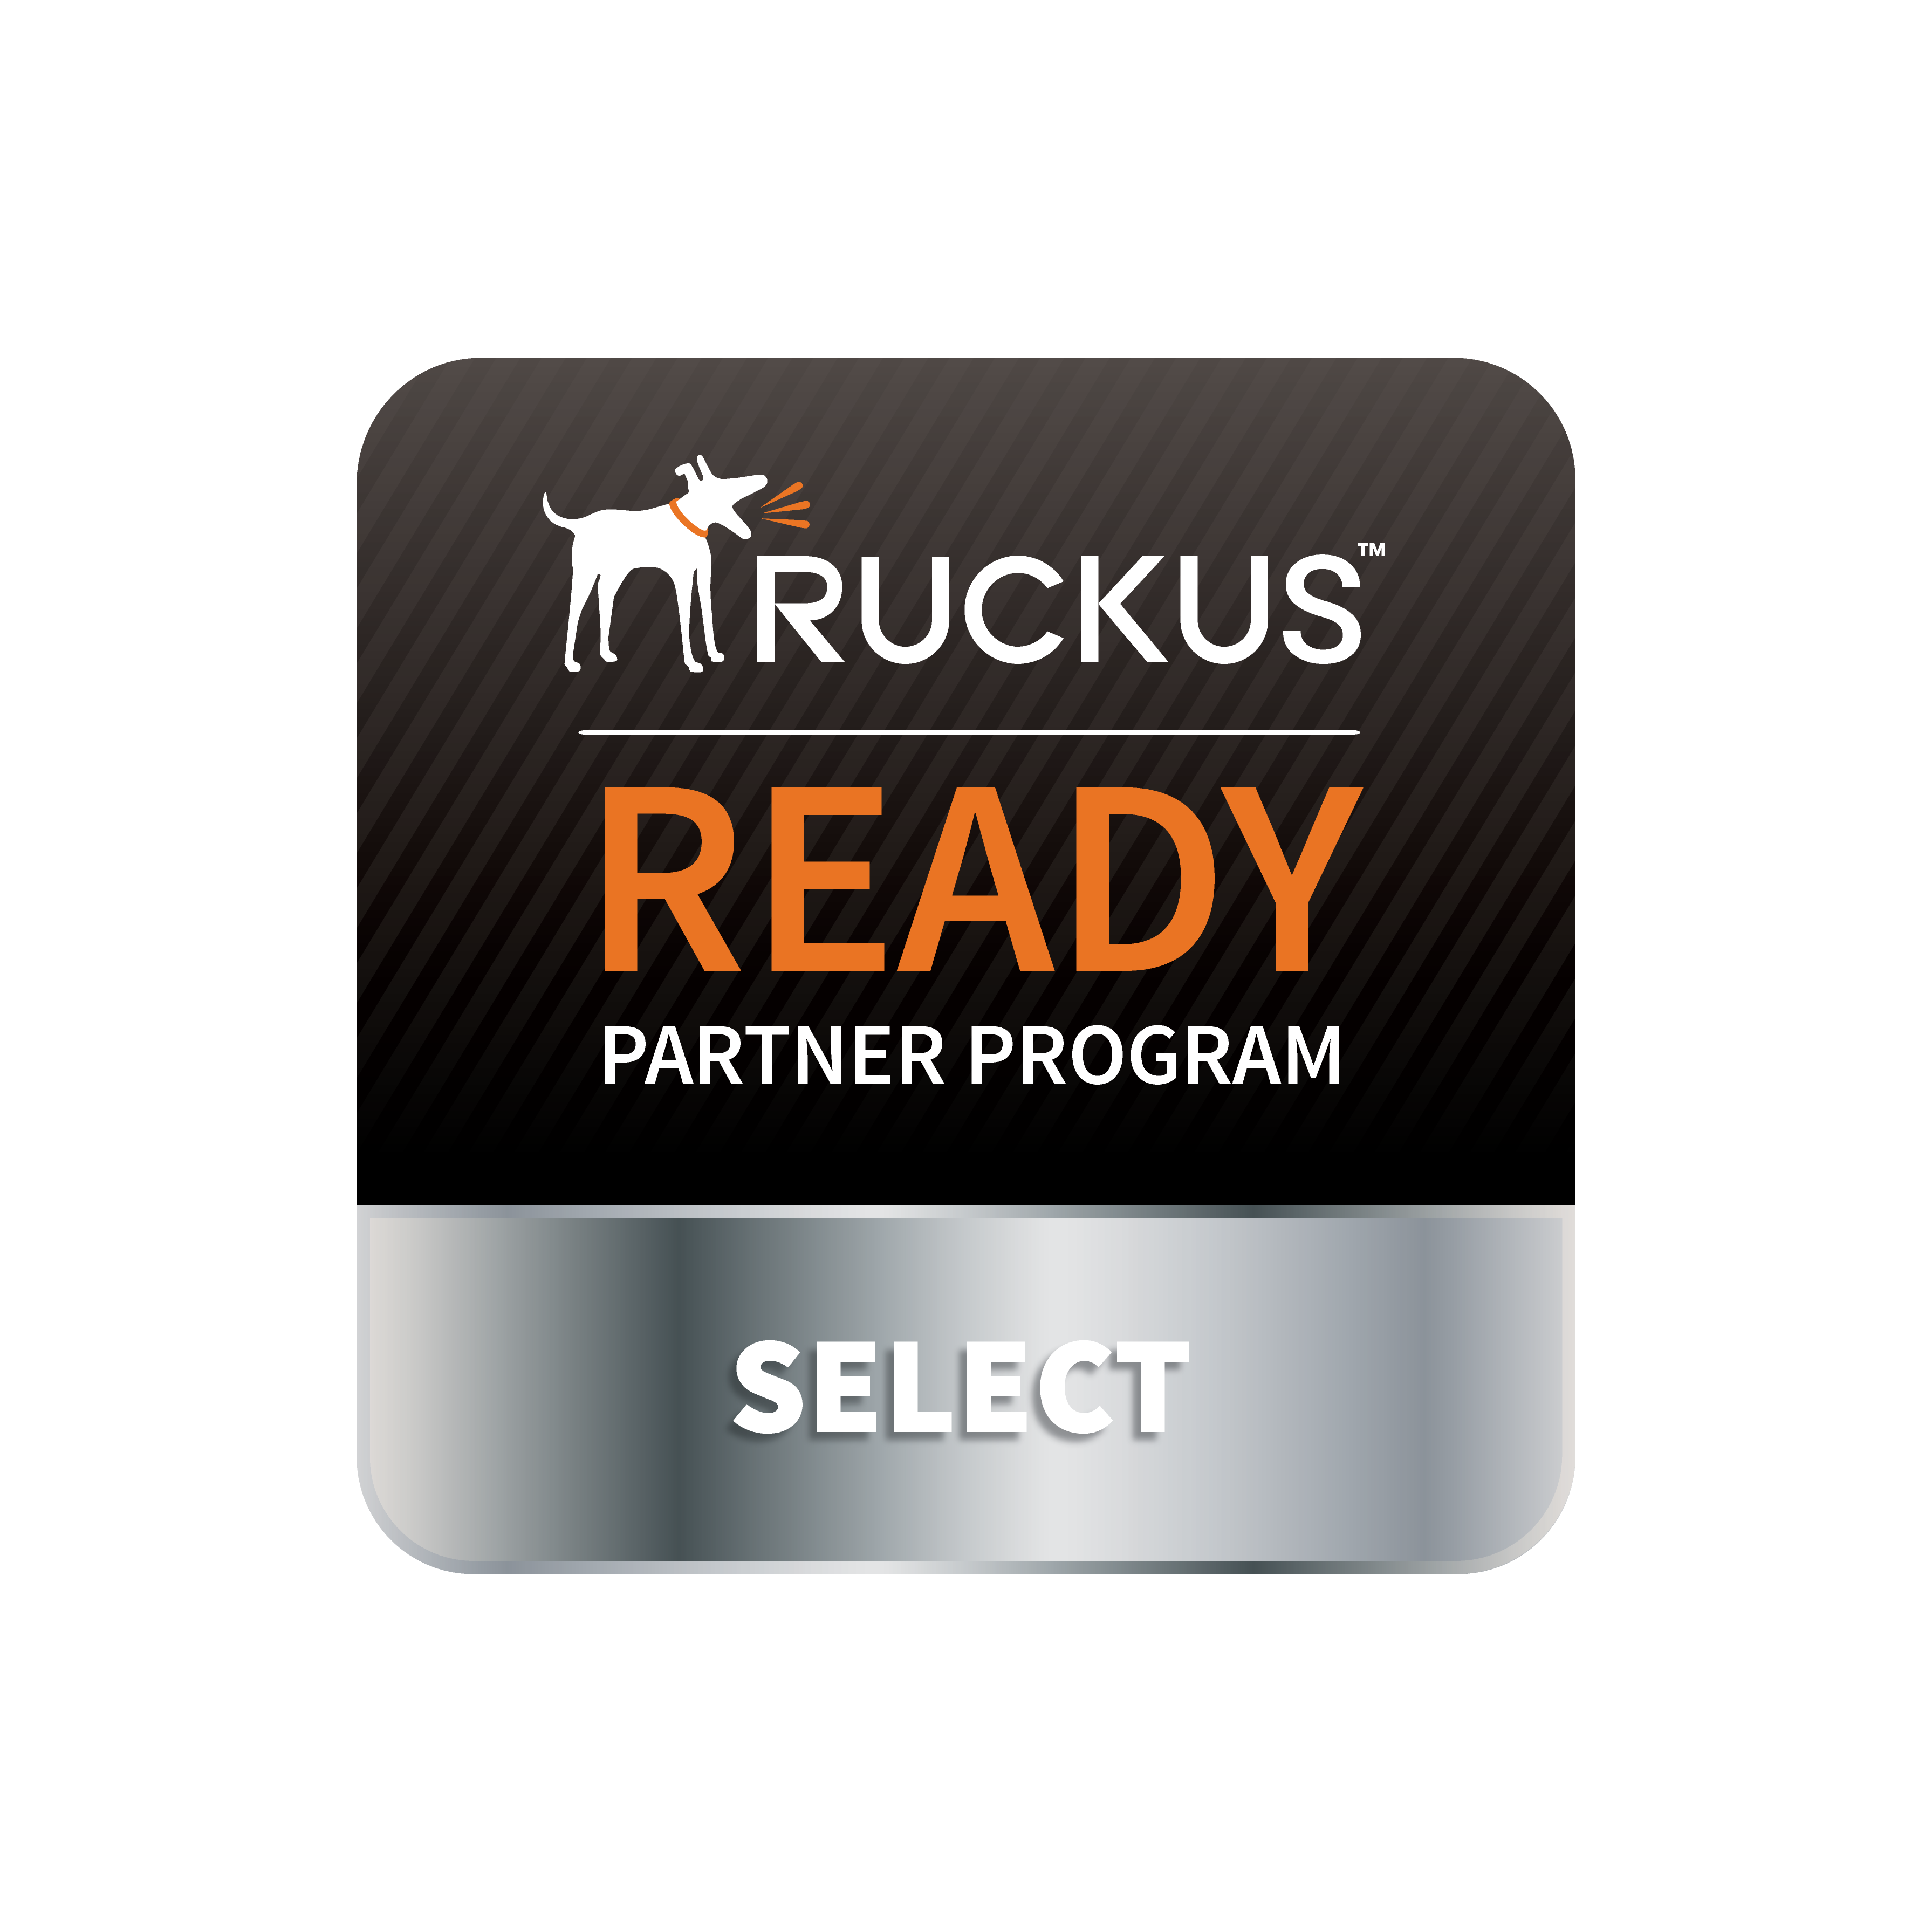 Ruckus-select-partner